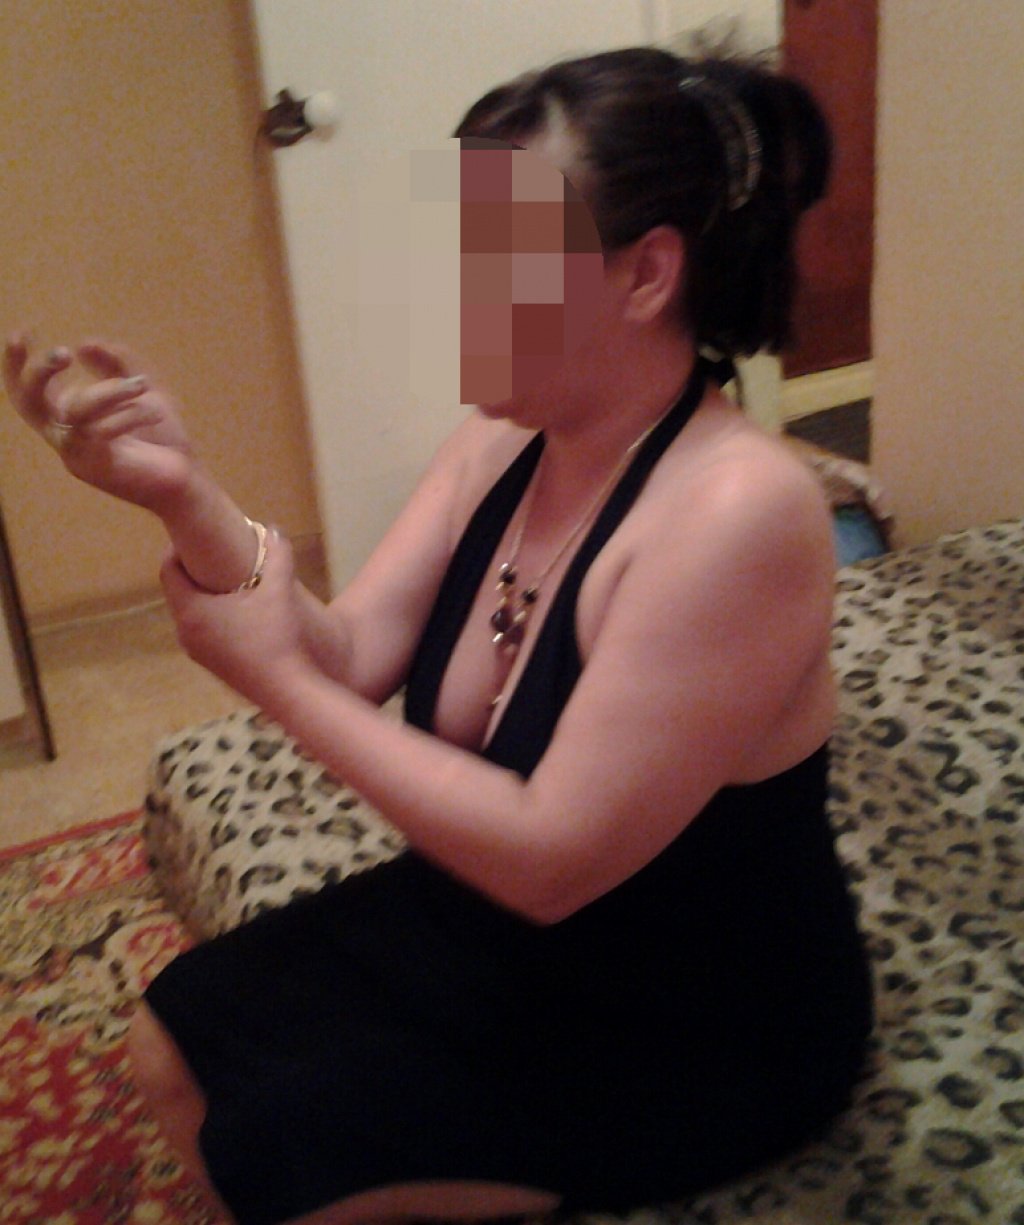 Марина без ВЫЕЗДА : проститутки индивидуалки в Челябинске